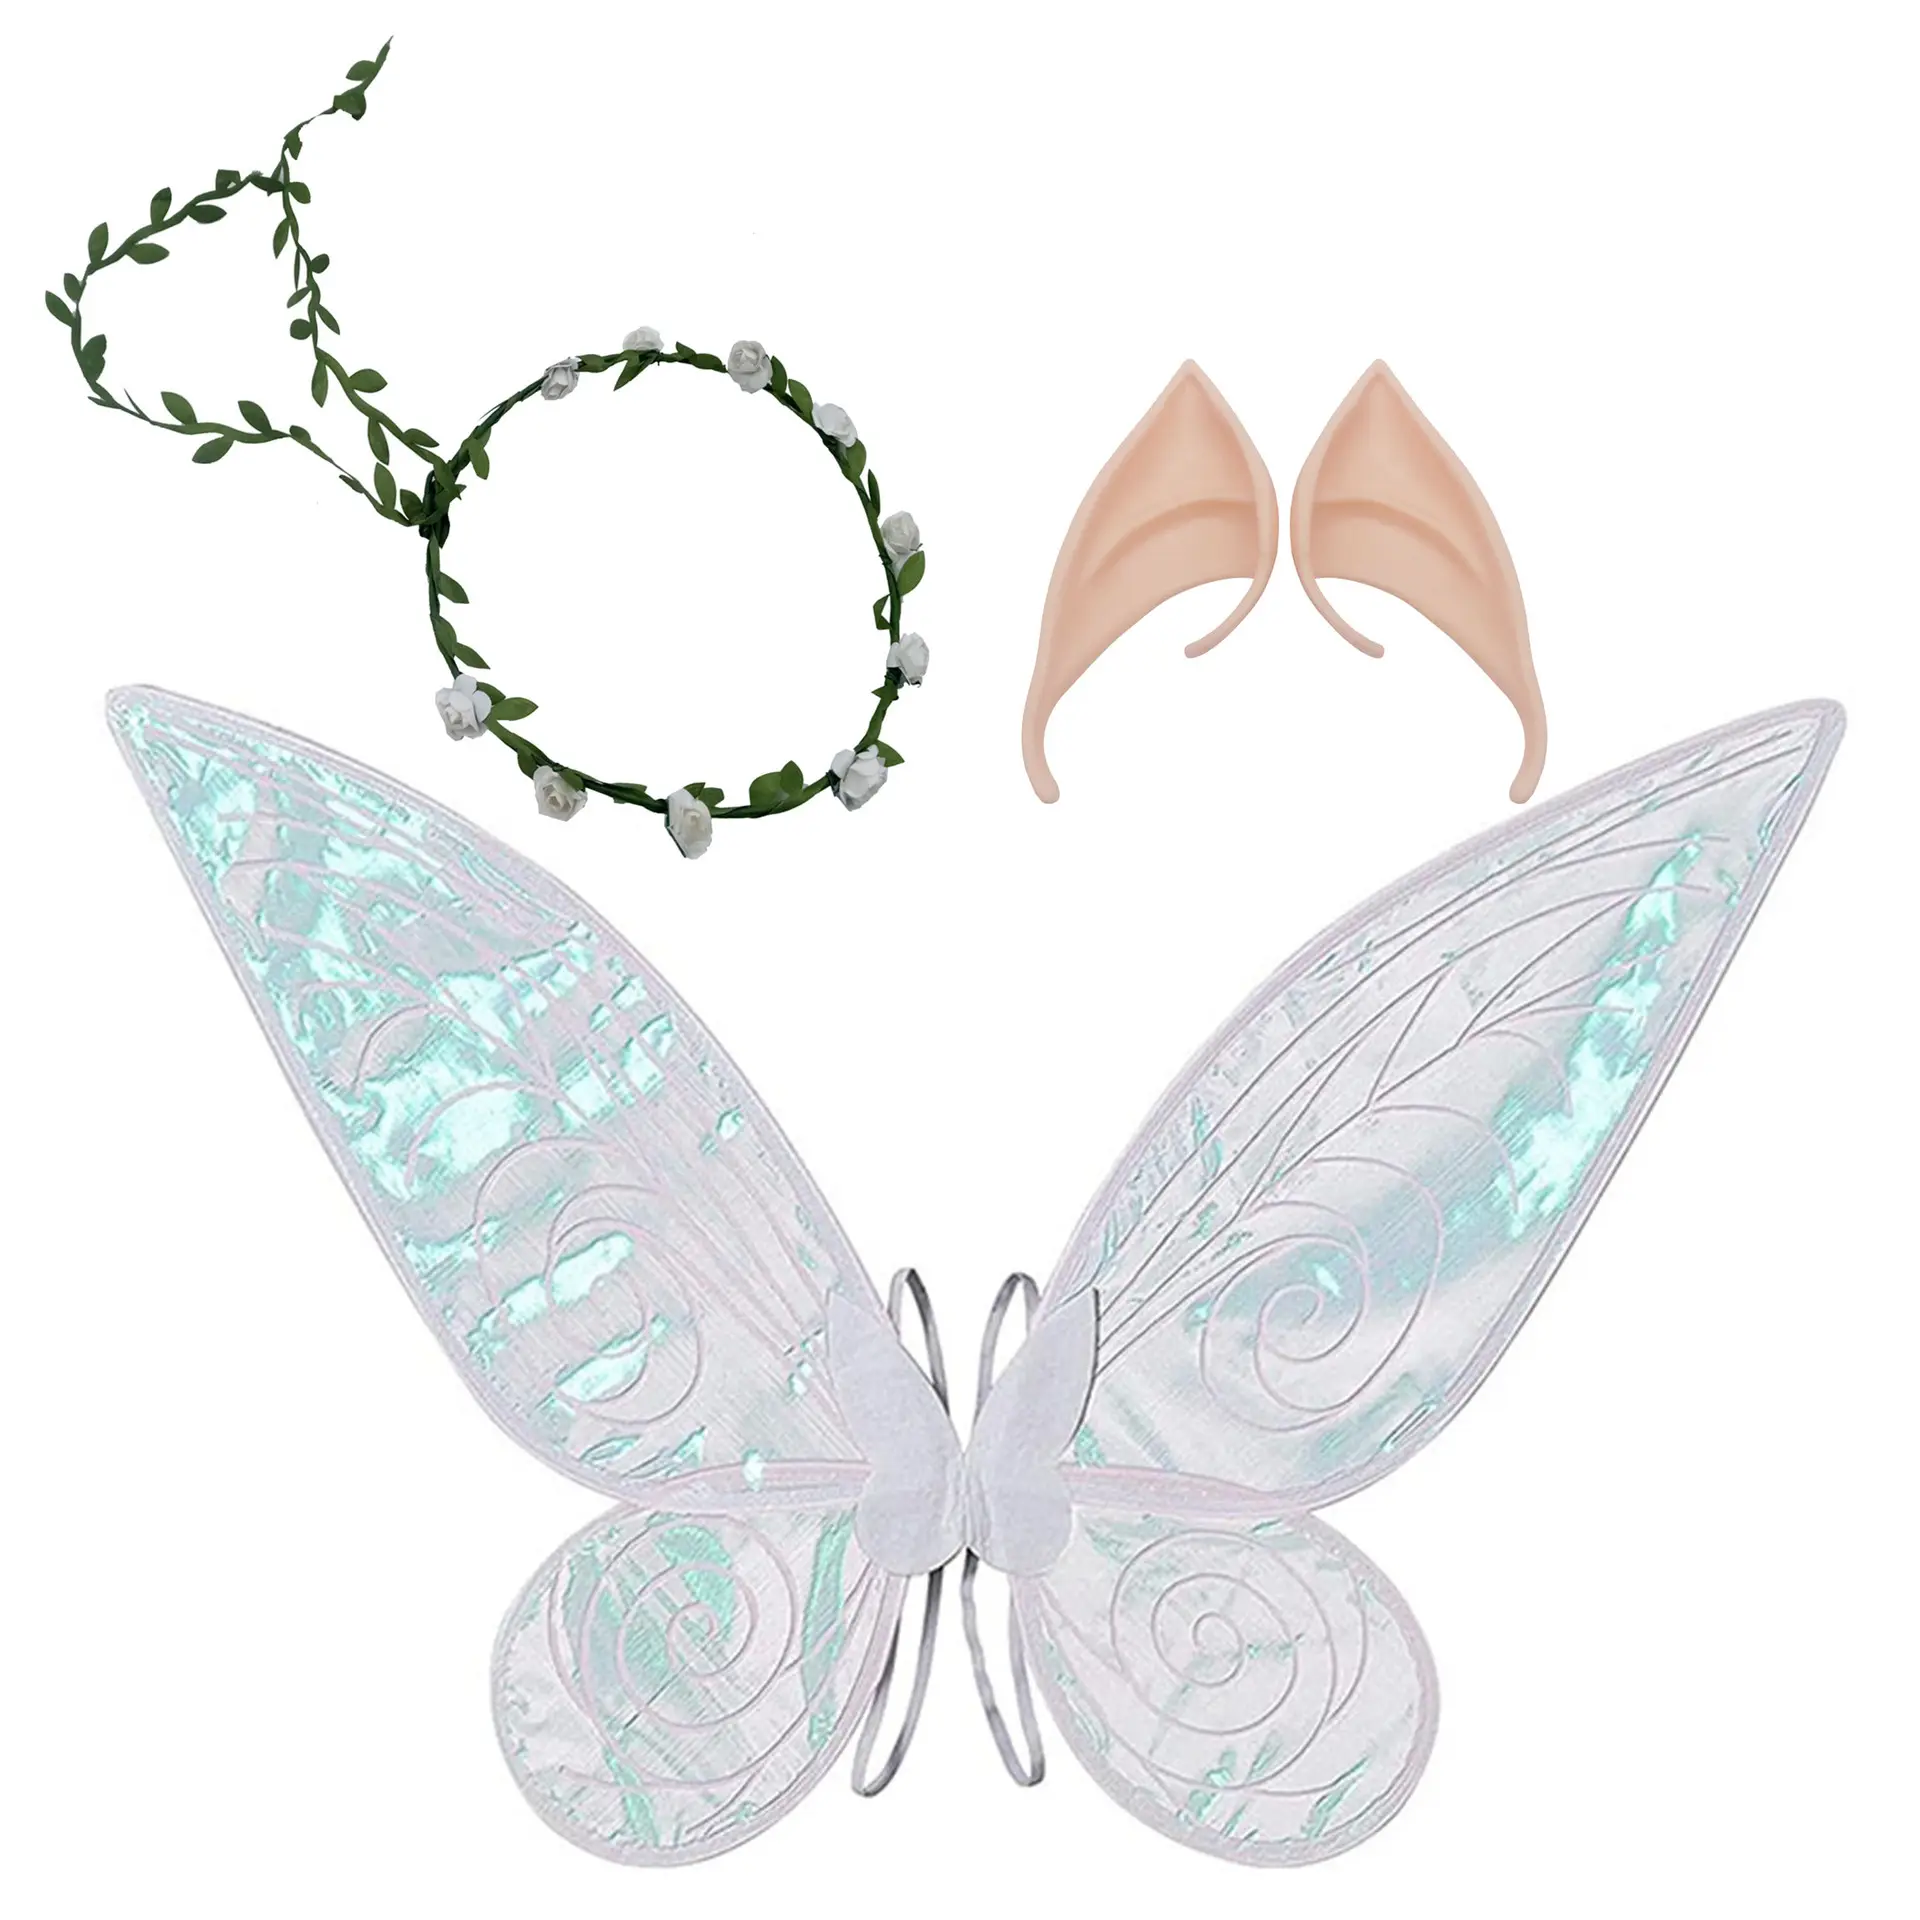 महिला लड़की के लिए तितली परियों के पंखों की पोशाक के लिए साफ कान के साथ दुल्हन राजकुमारी विंग की पोशाक